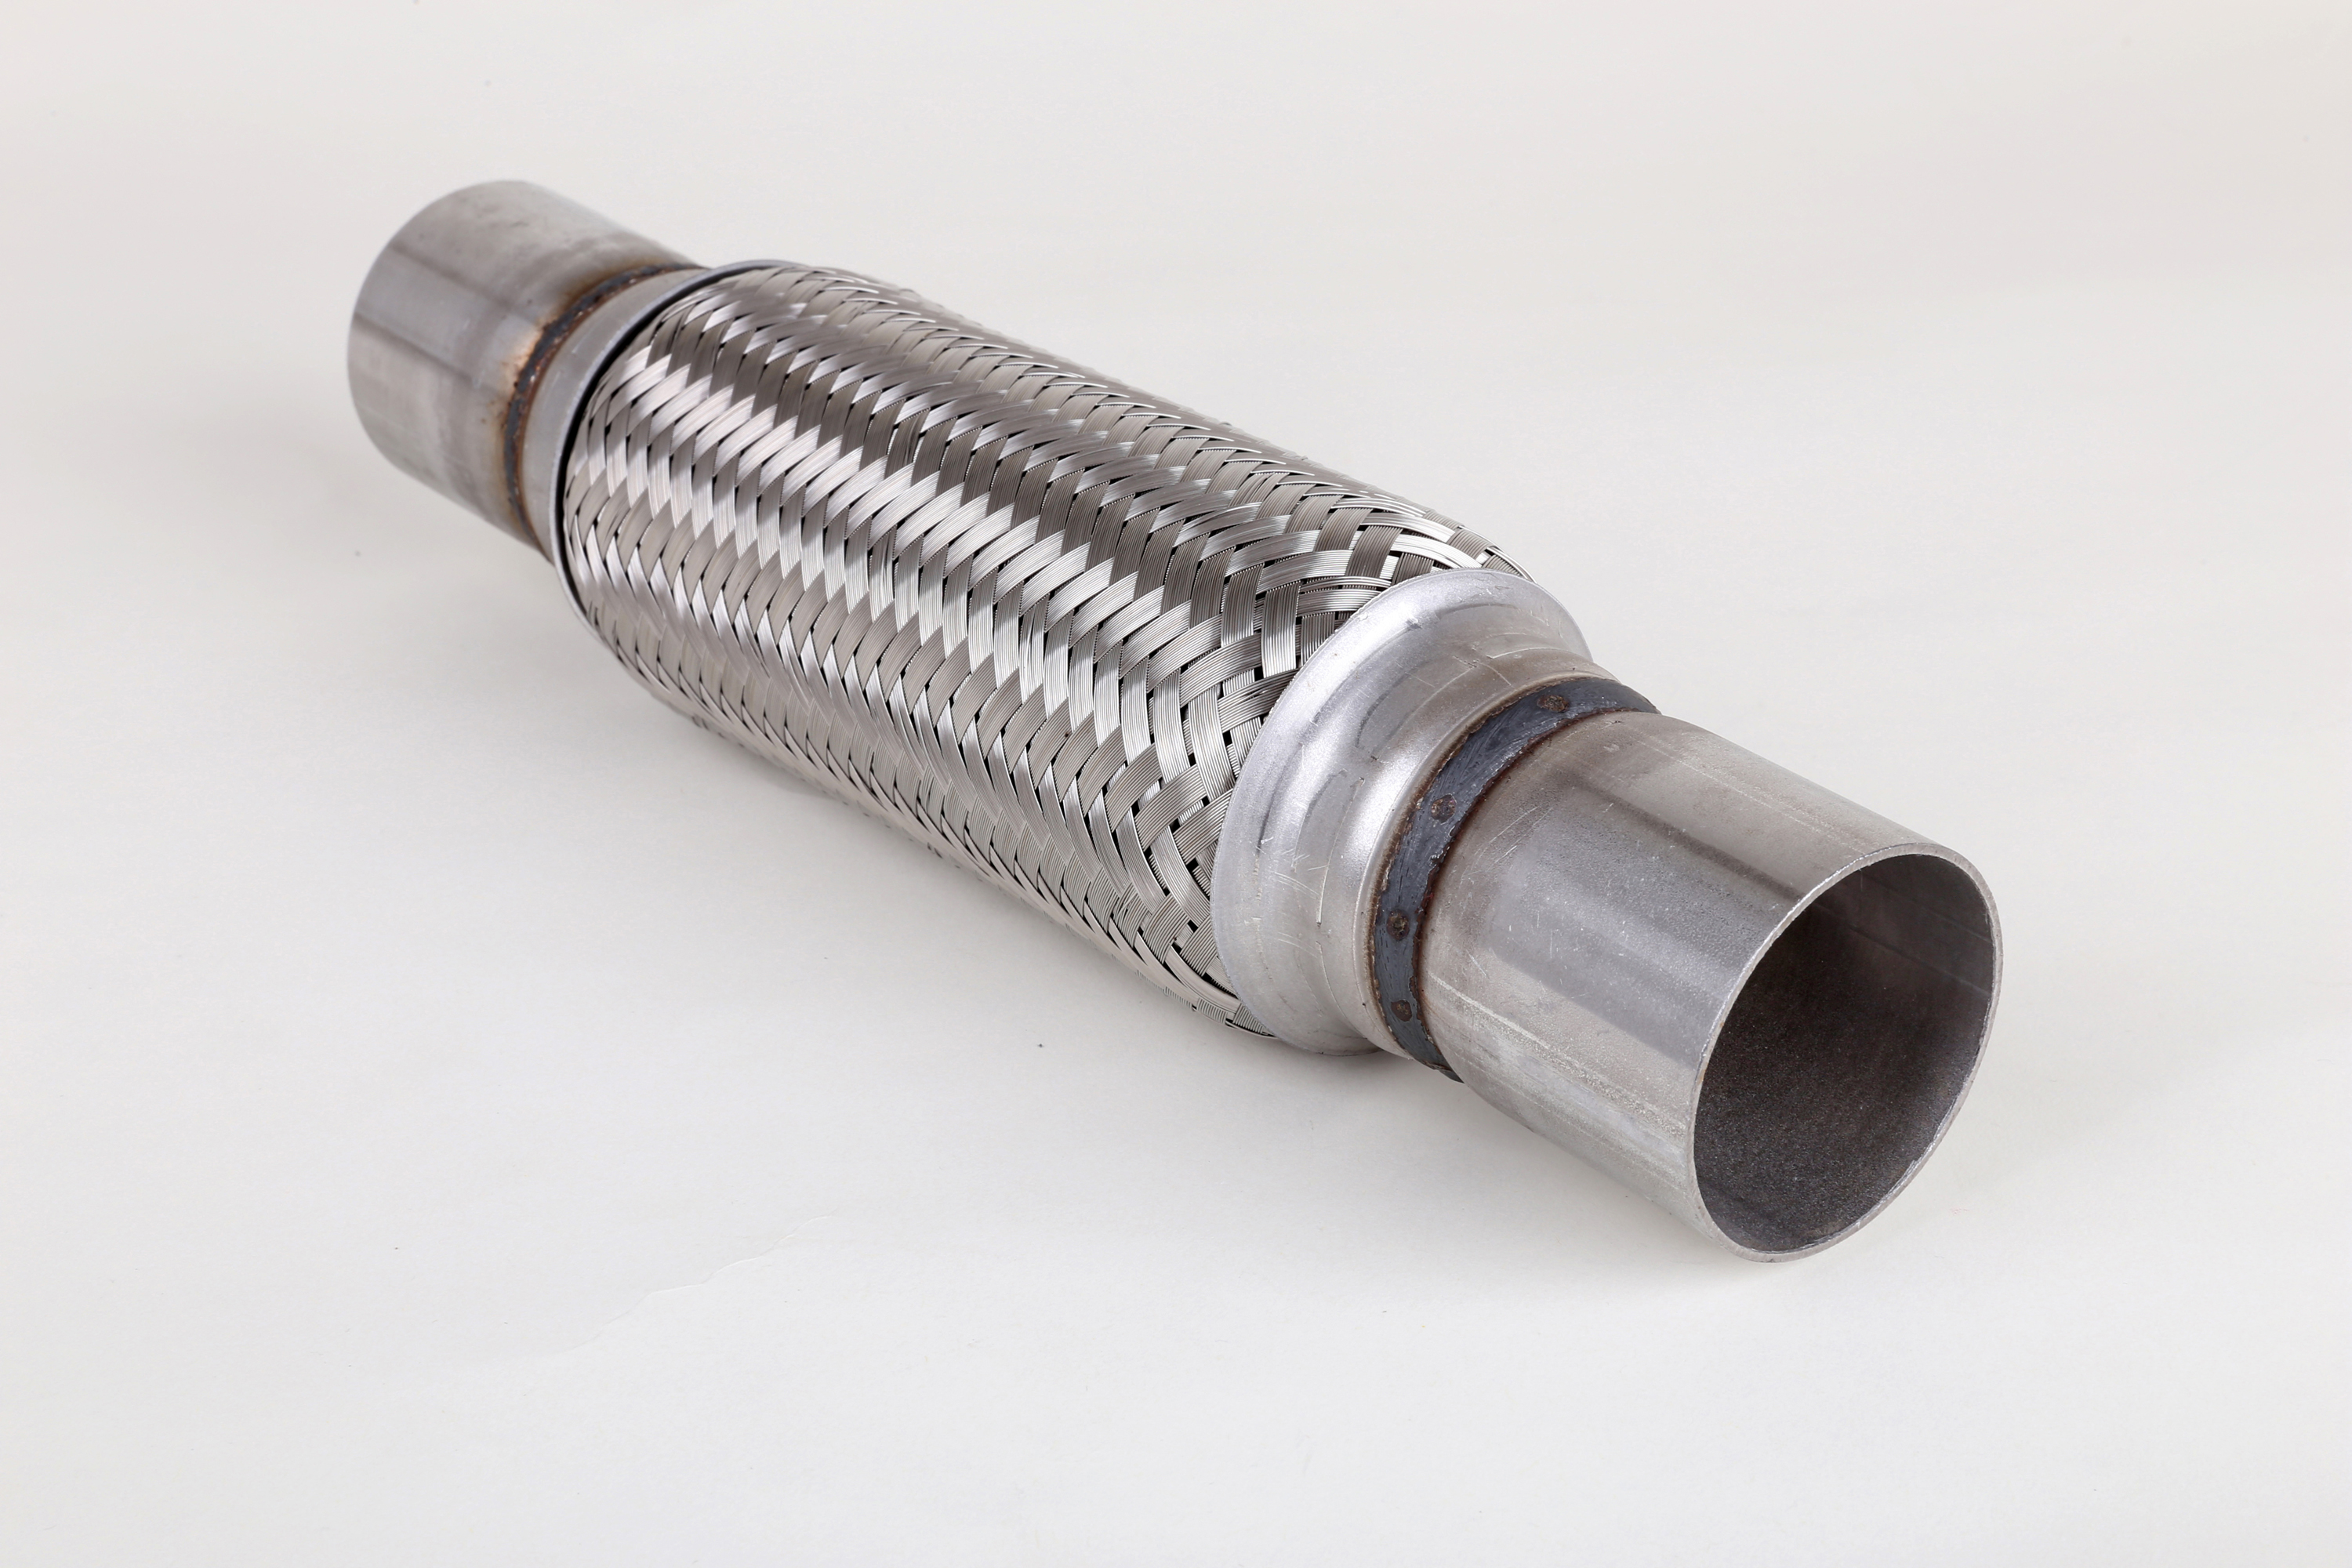 Proveedor de tubos de escape flexibles galvanizados para motores pequeños